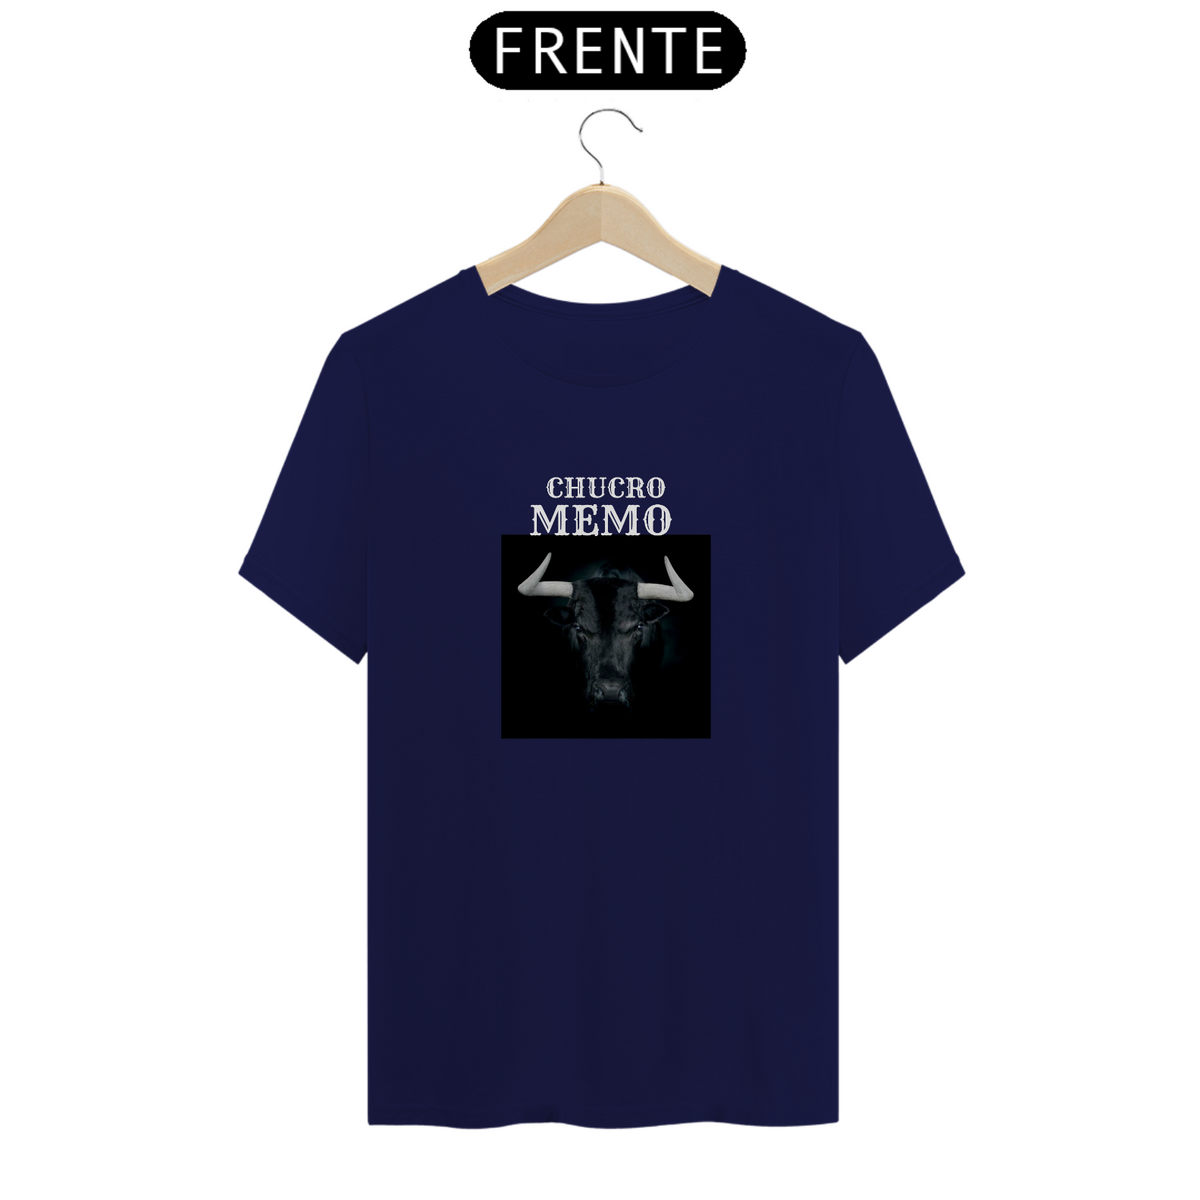 Nome do produto: Camiseta T-Shirt Classic Unissex / Crucro Memo